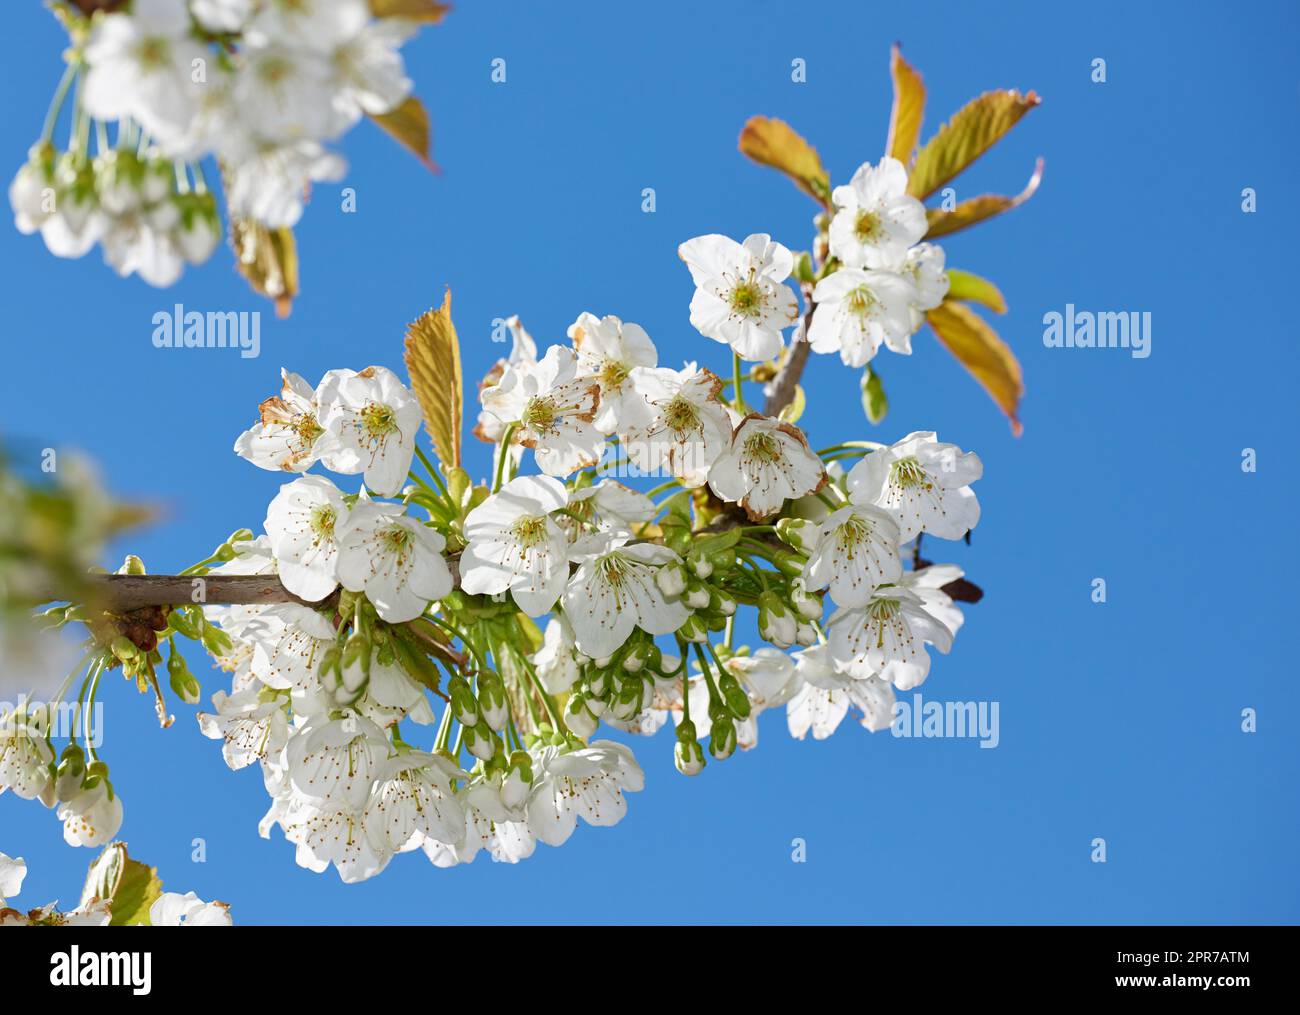 Mirabella blüht im Frühling. Nahaufnahme von weißen Blumen auf dem Ast gegen den blauen Himmel an einem sonnigen Tag. Blühender Pflaumenbaum Mirabelle (Prunus domestica L.) im Frühling. Stockfoto